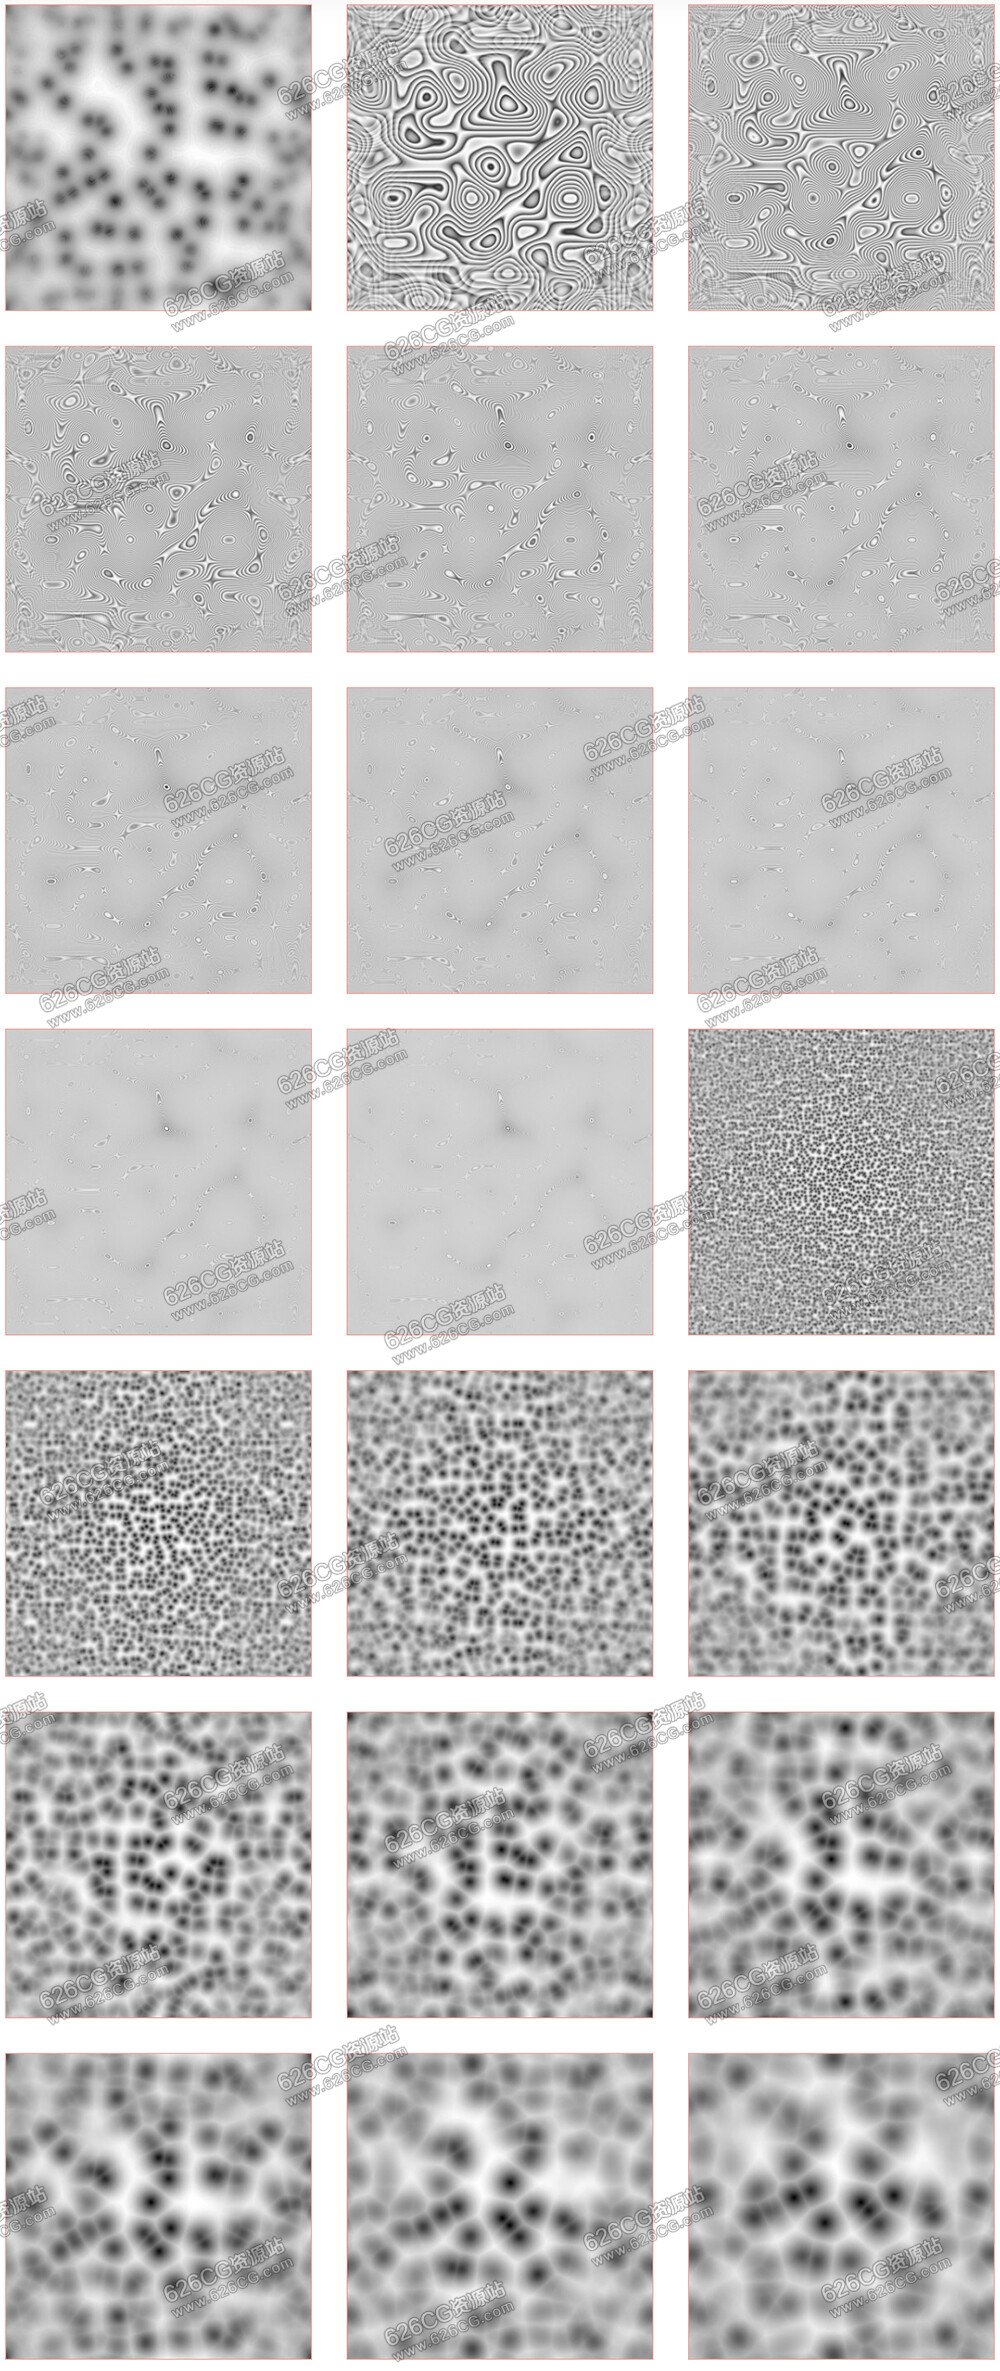 20个生物分子细胞风格类黑白贴图 Genetica Pack 626CG资源站